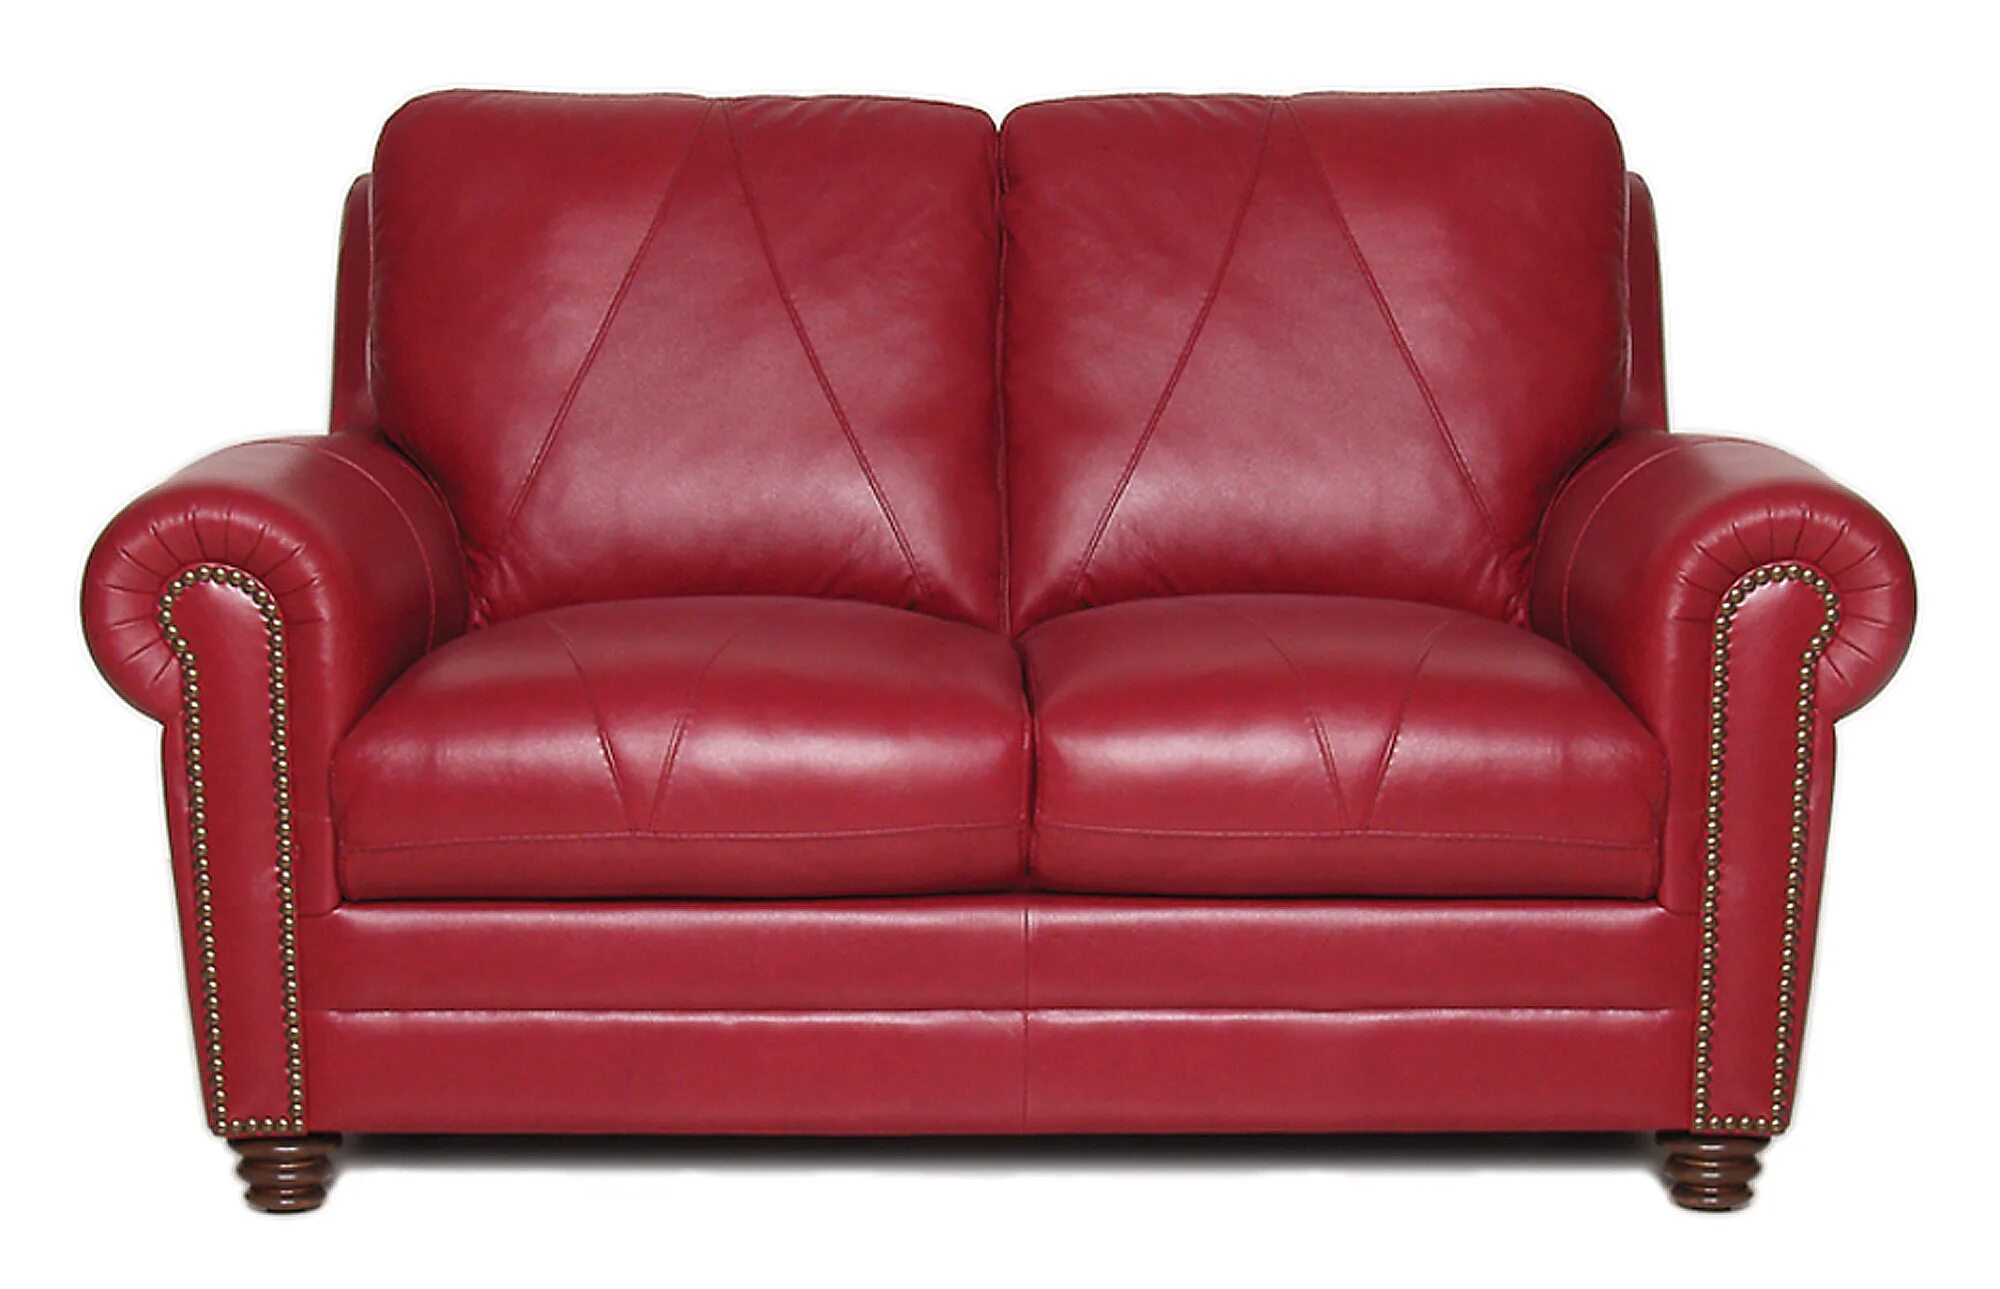 Двухместное кожаное кресло бордо Пинскдрев. Красный кожаный диван. Красное кожаное кресло. Диван хоффф красный кожа.